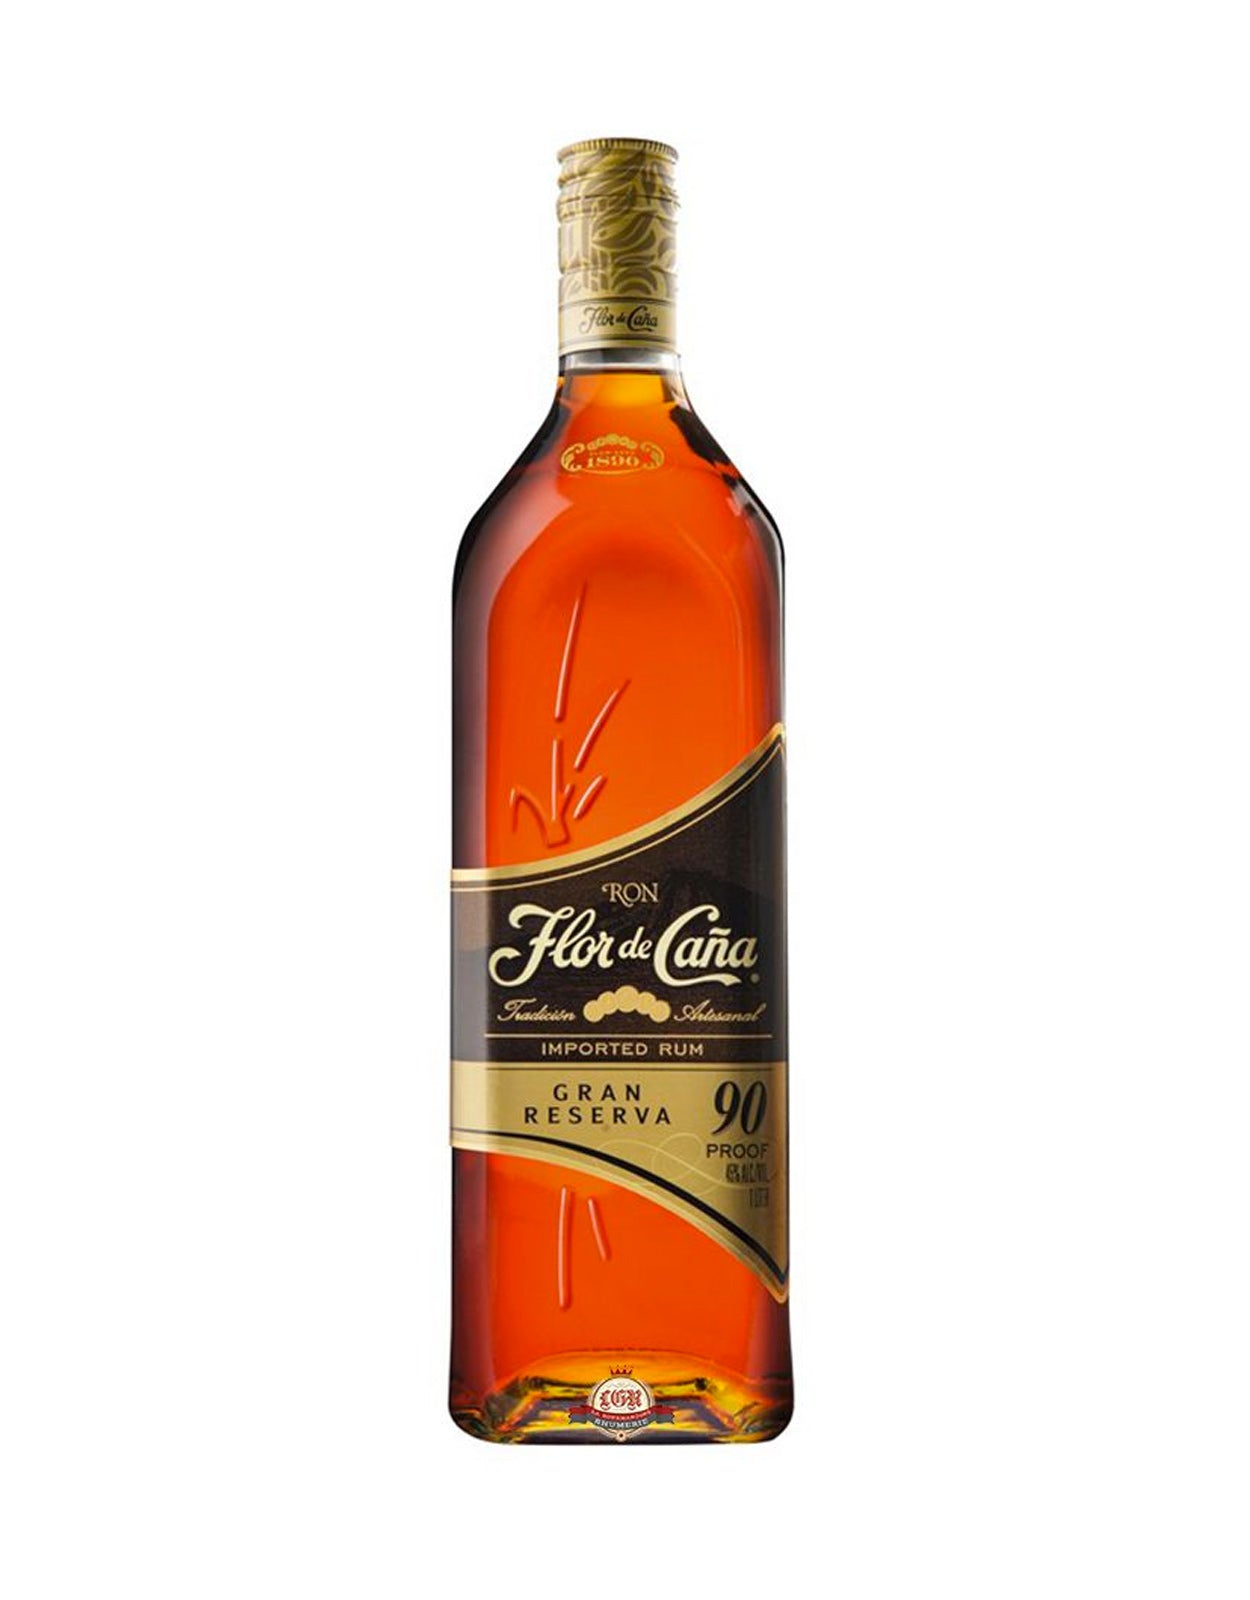 Flor De Cana Gran Reserva 90 Proof Rum - 1 Litre